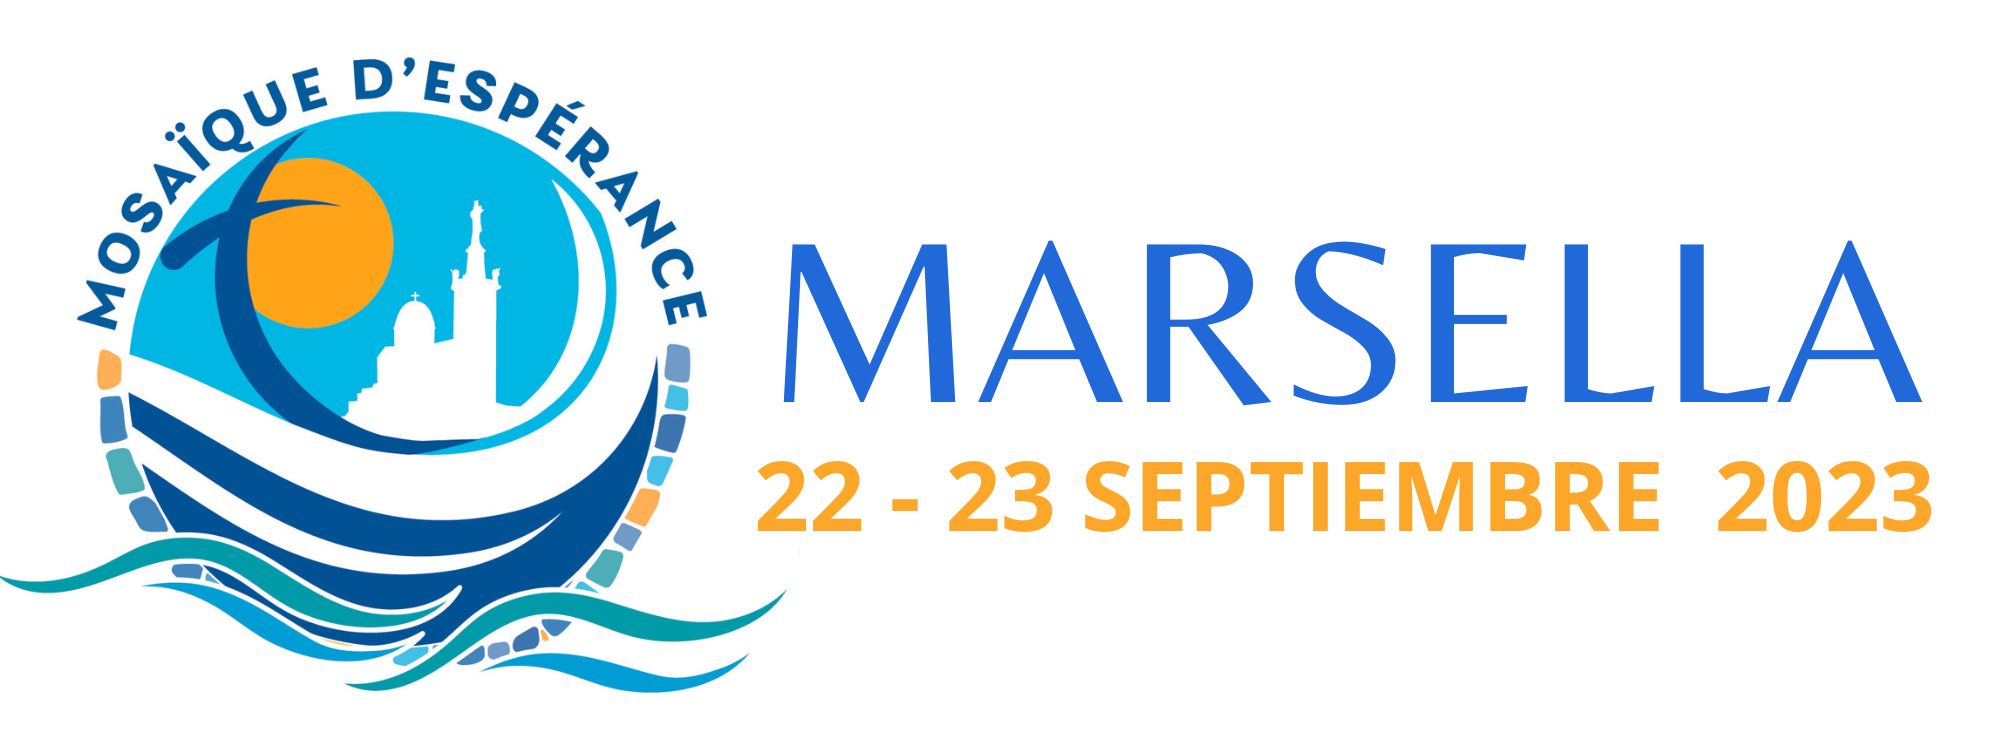 Viaje apostólico del Santo Padre a Marsella para la conclusión de los 'Encuentros del Mediterráneo' (22 - 23 de septiembre de 2023)